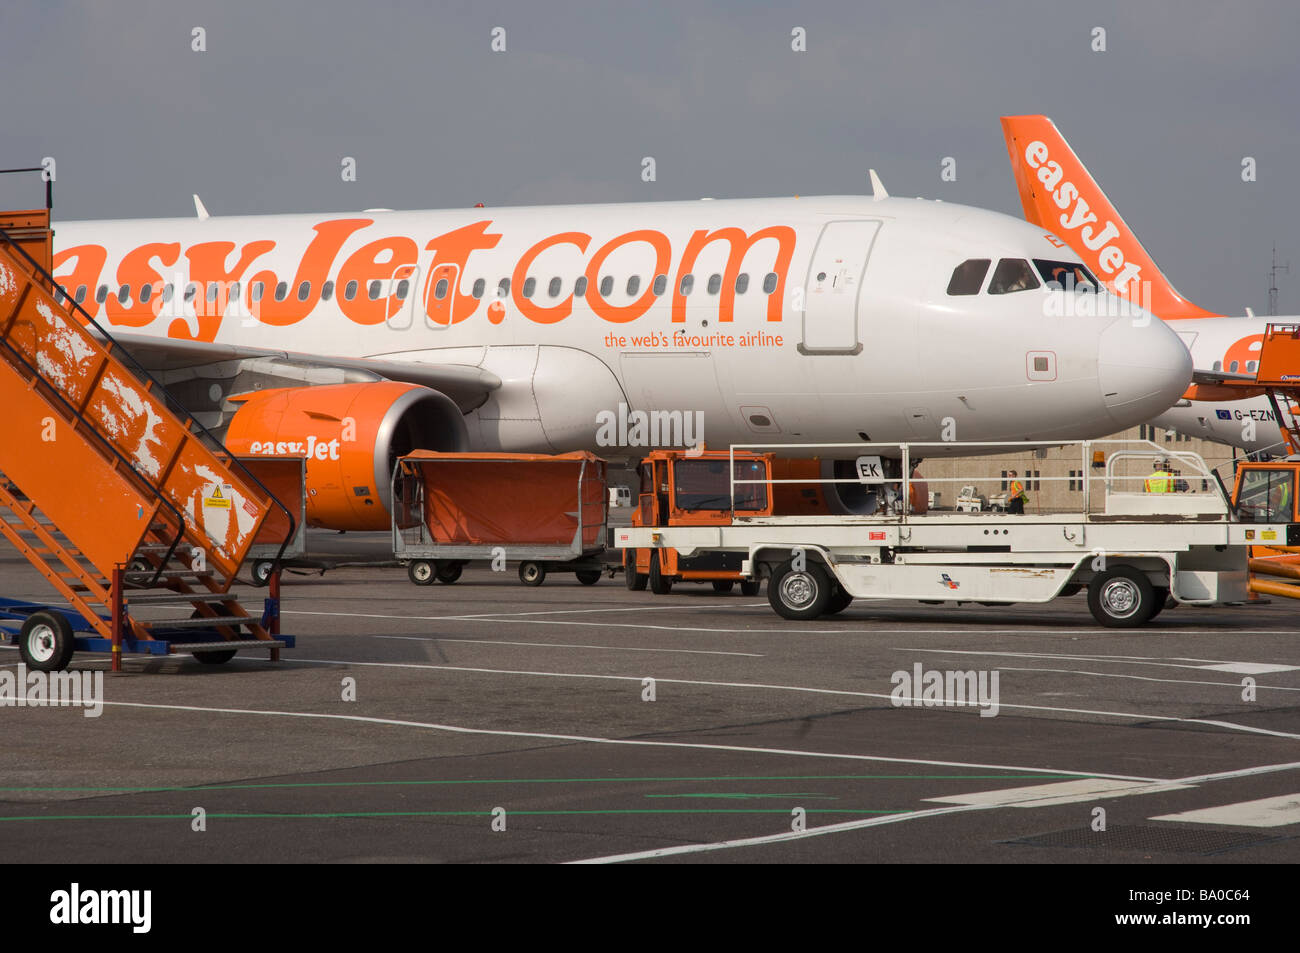 Easyjet plane on tarmac Luton Airport England UK Europe Stock Photo